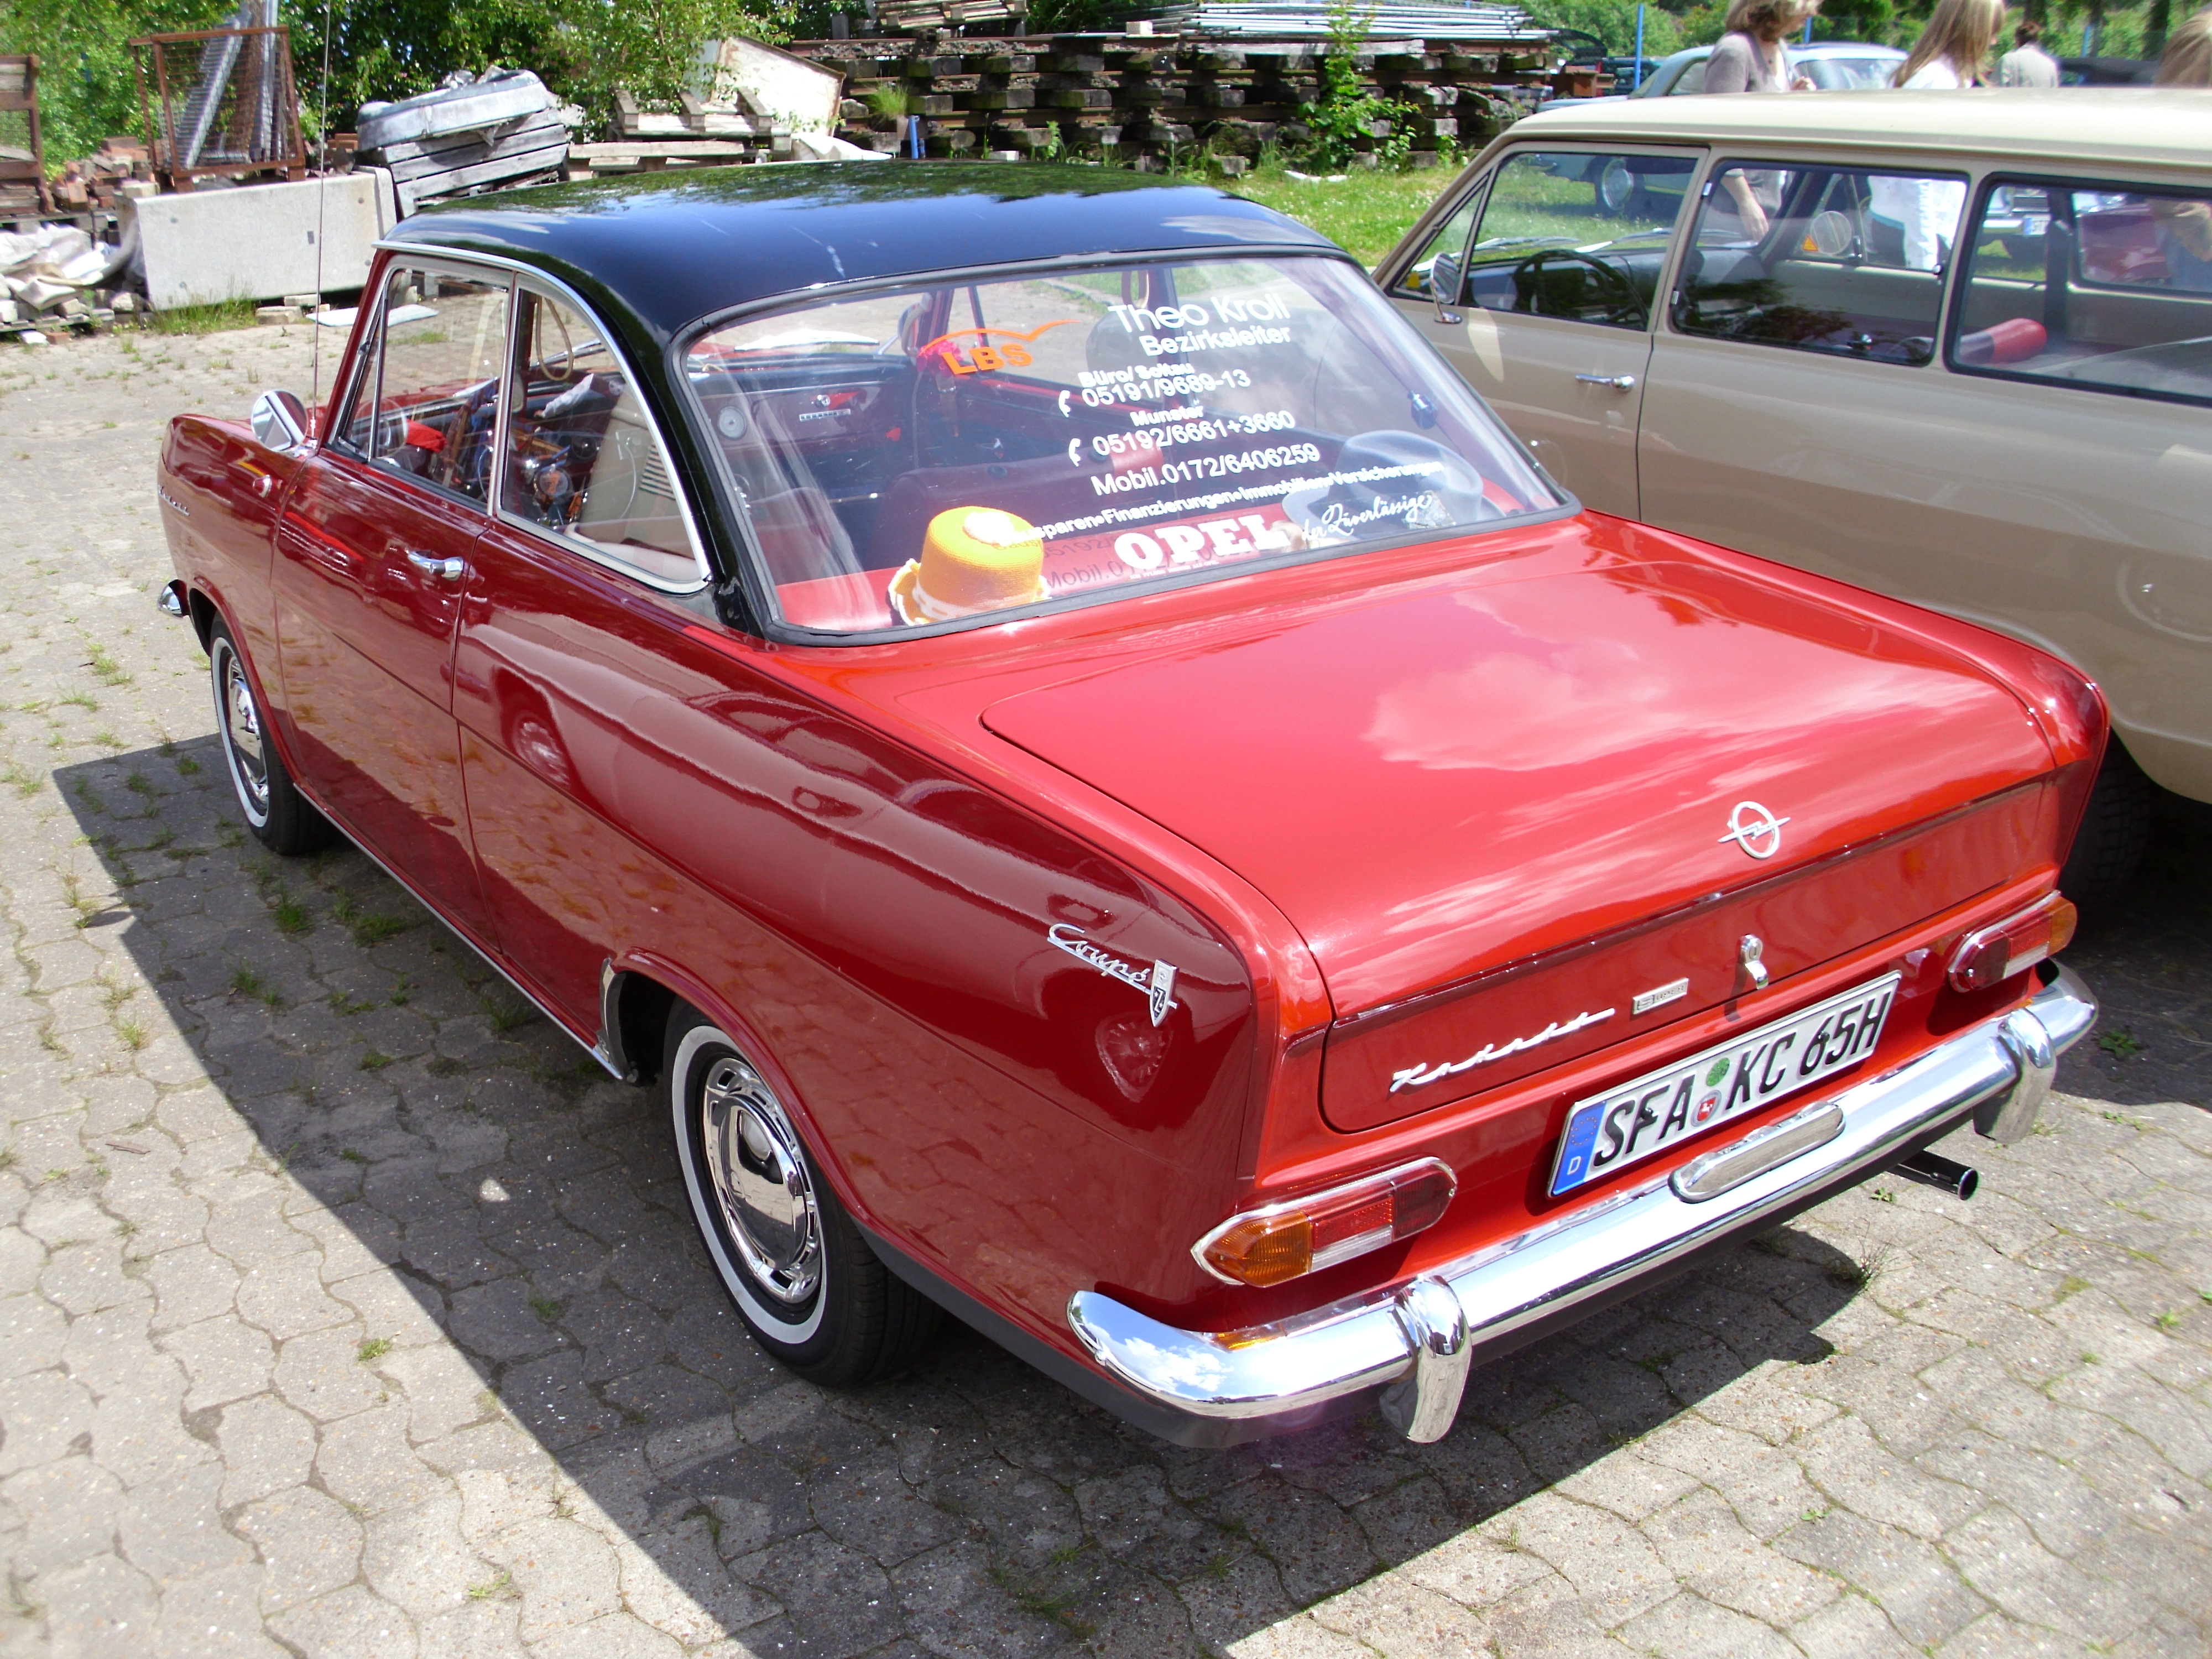 Opel Kadett A CoupÃ© 1964-65 -2- | Flickr - Photo Sharing!